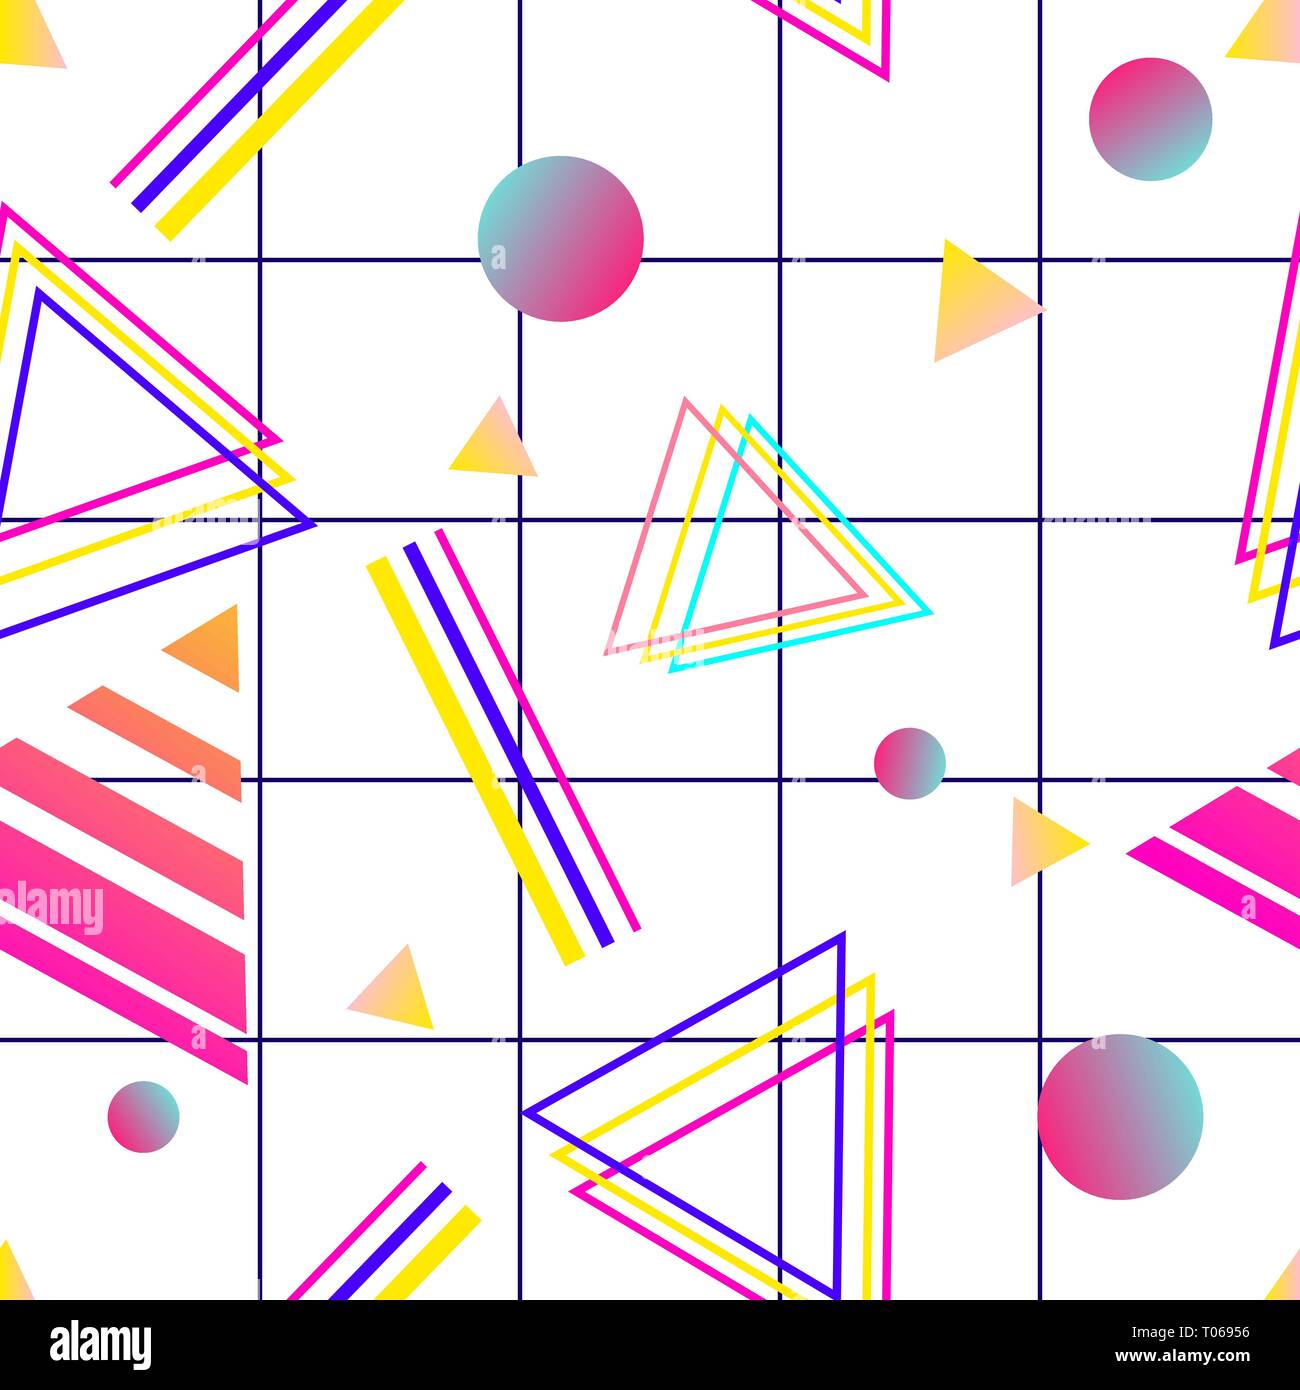 Vaporwave seamless 80's modello di stile con forme geometriche. Sfondo colorato con forme, gradienti e testo. Illustrazione Vettoriale